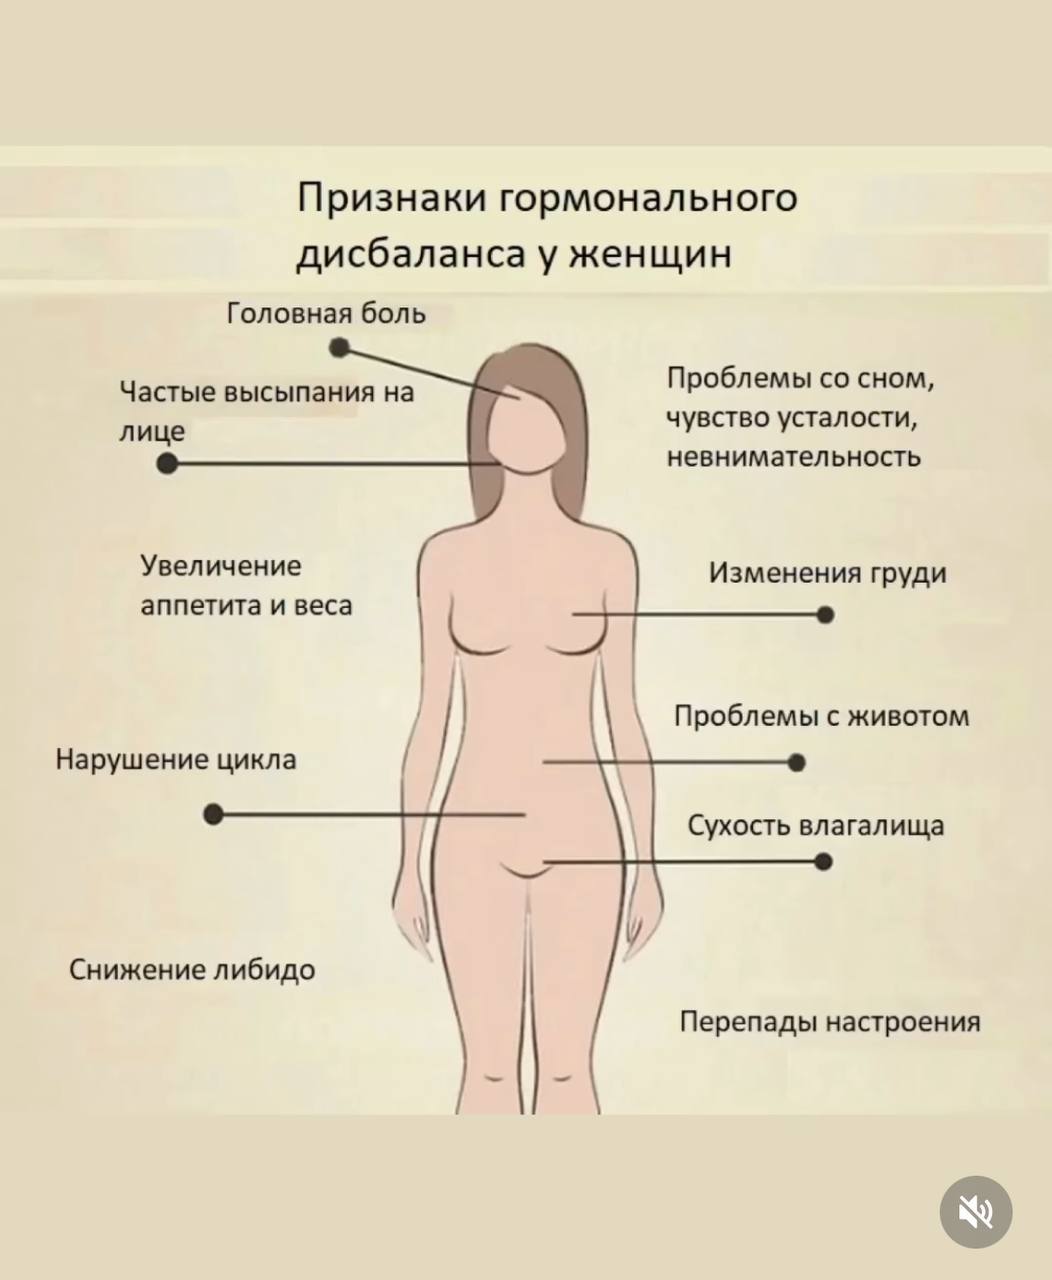 какой гормон отвечает за рост груди у женщин фото 3